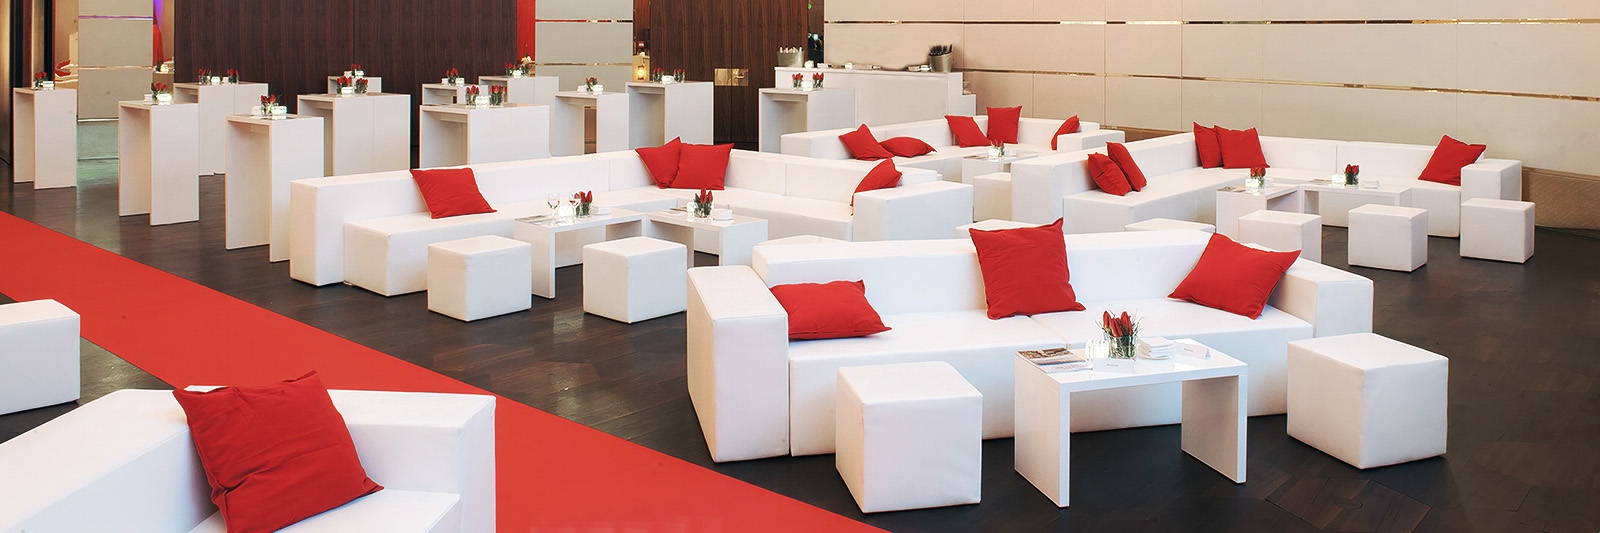 weisse Eck Lounge Garnitur mieten mit Sitzwürfel für Hotel, Event, Messe